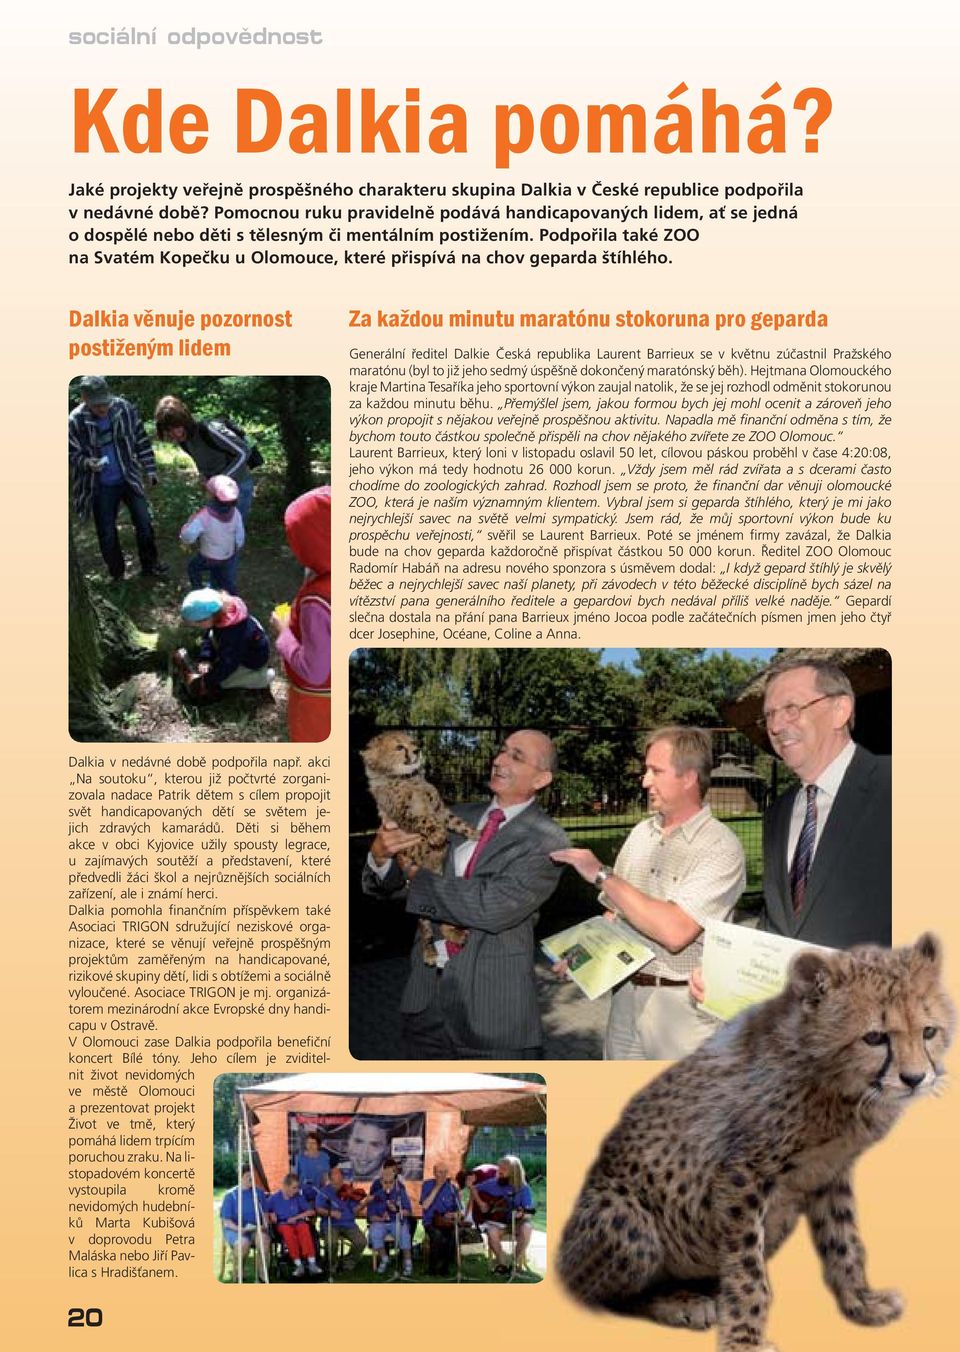 Podpořila také ZOO na Svatém Kopečku u Olomouce, které přispívá na chov geparda štíhlého.